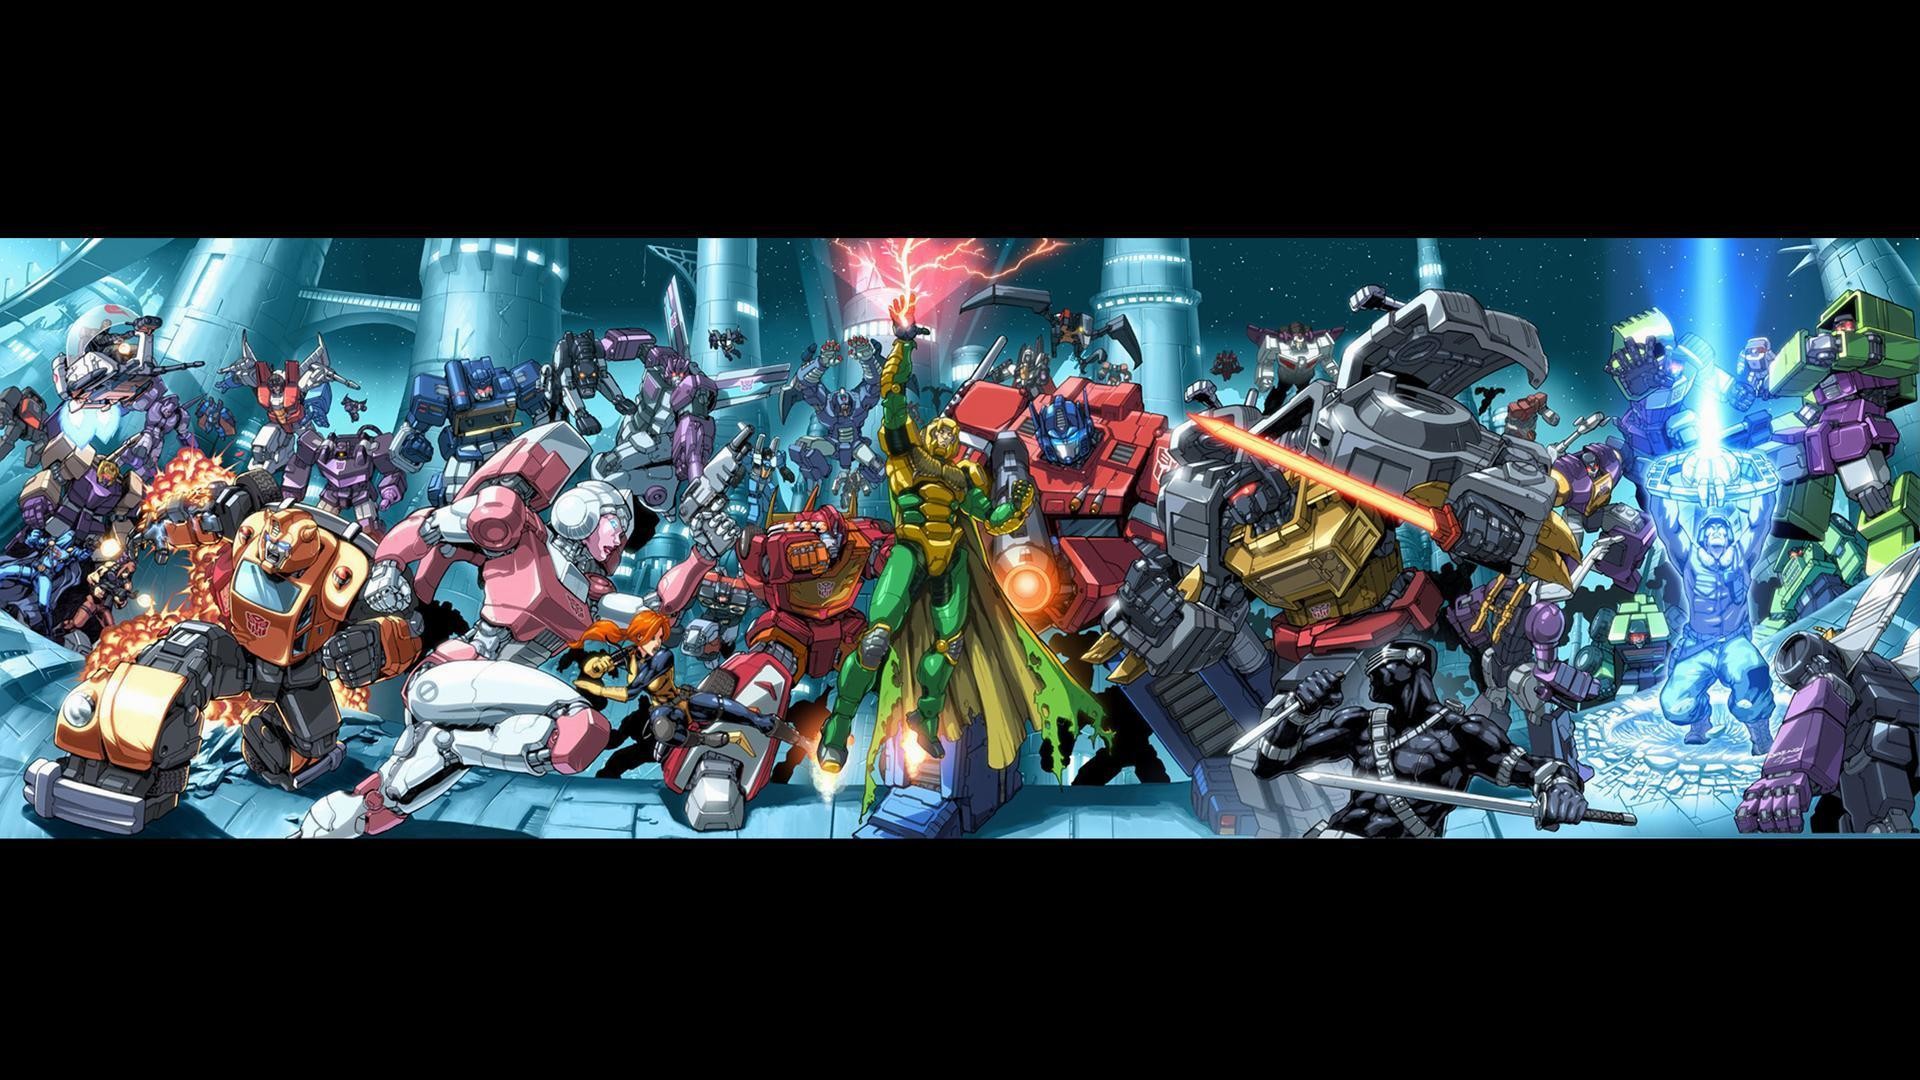 Transformers G1 Wallpaper 4k , HD Wallpaper & Backgrounds